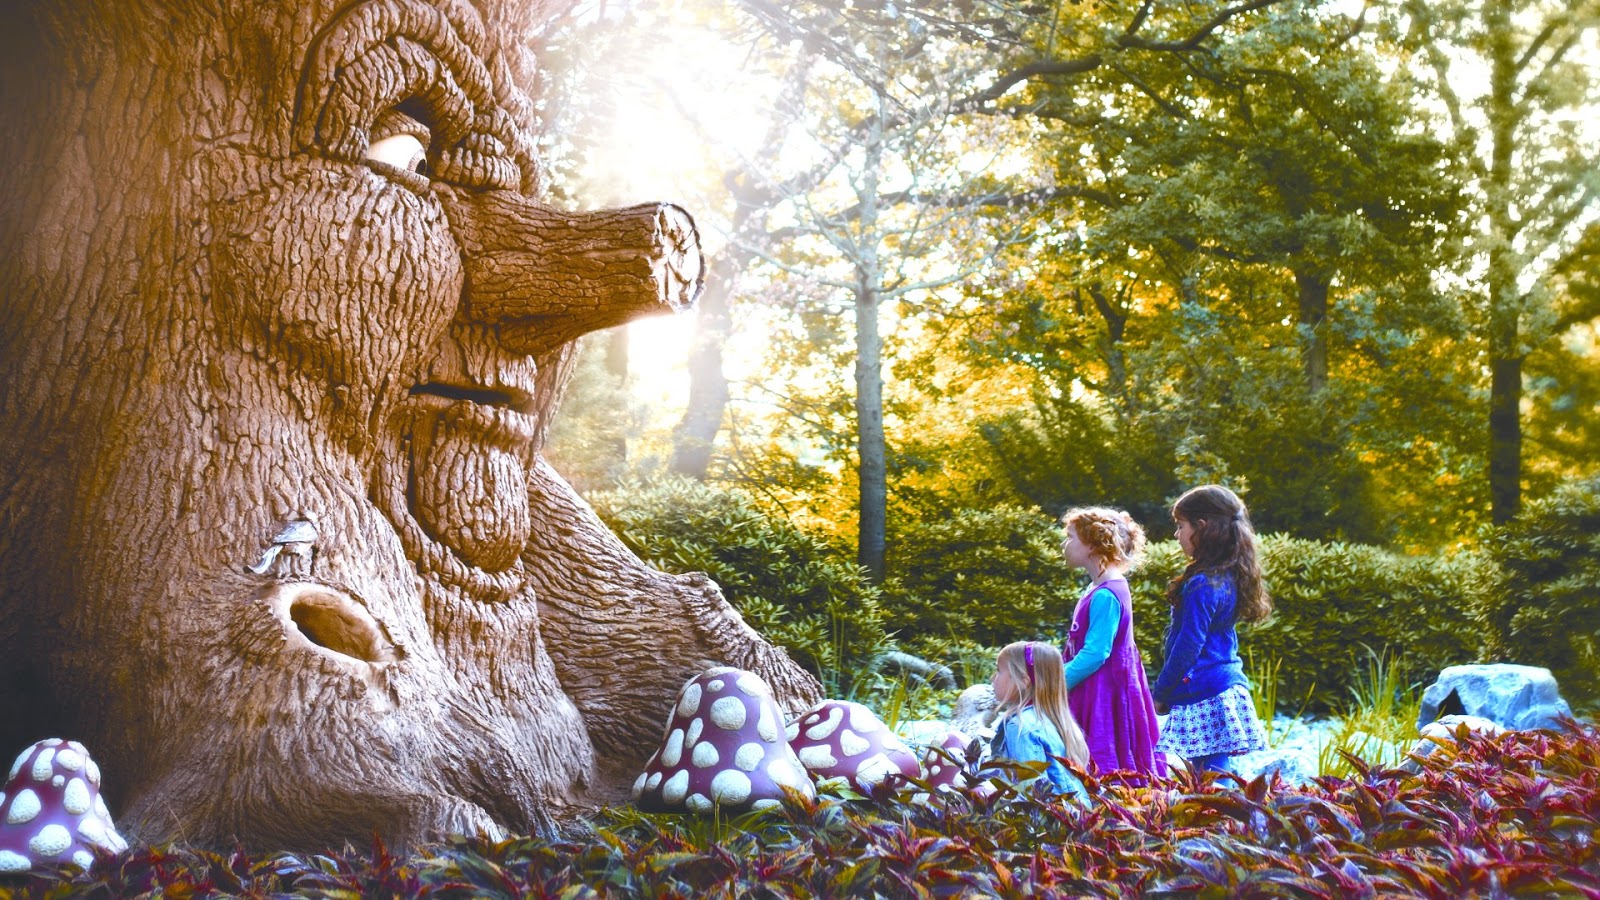 Efteling Fairytale Forest - HD Wallpaper 